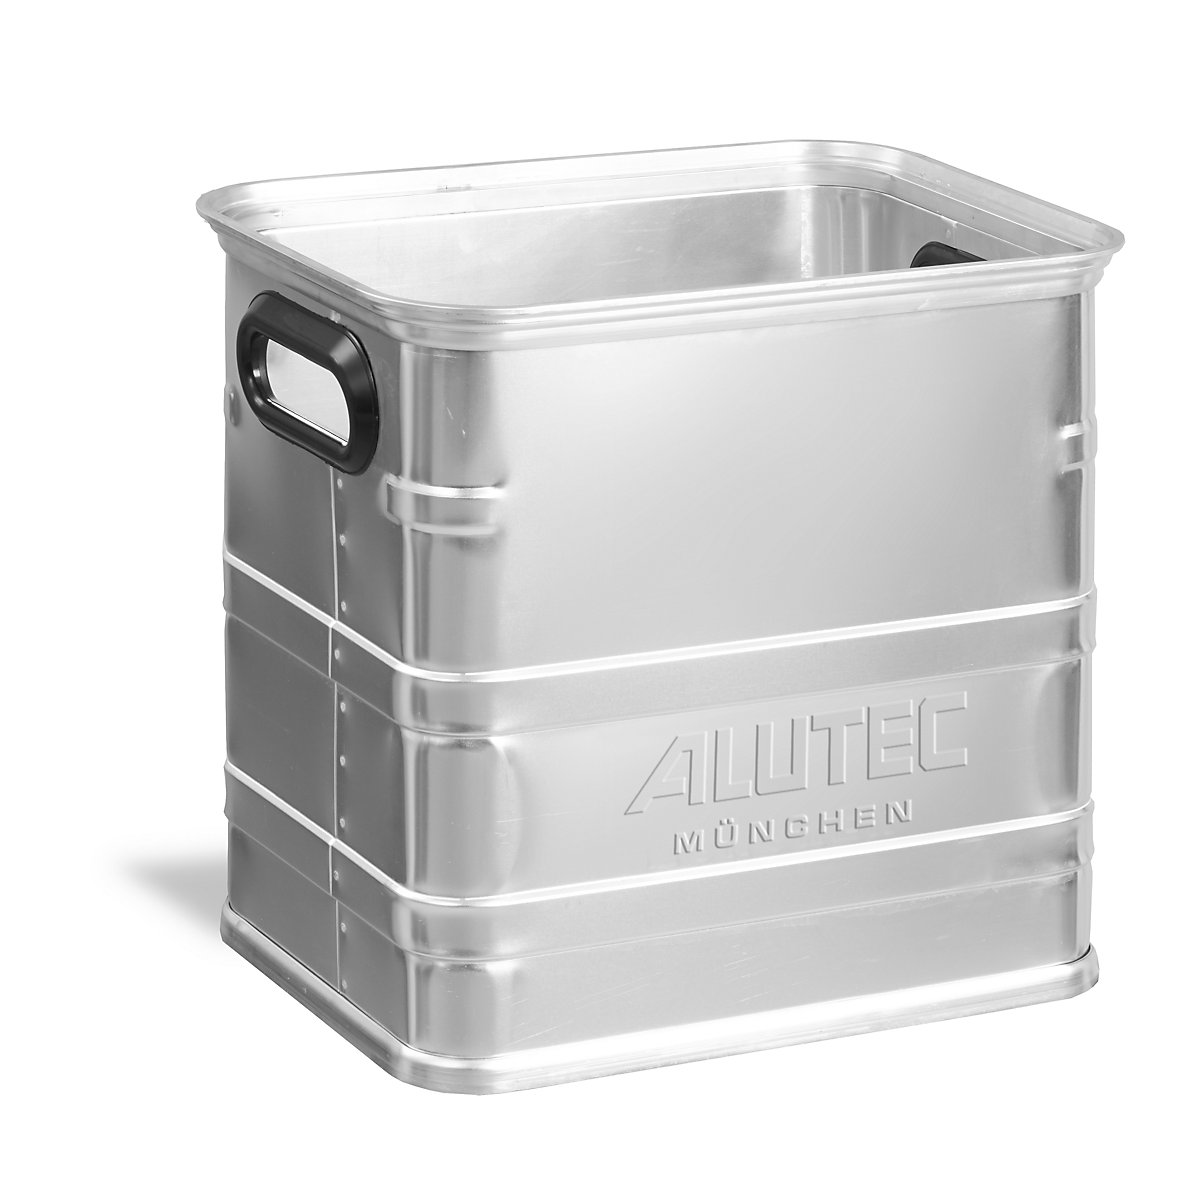 Caja de transporte de aluminio, apta para europalets, capacidad 40 l-4